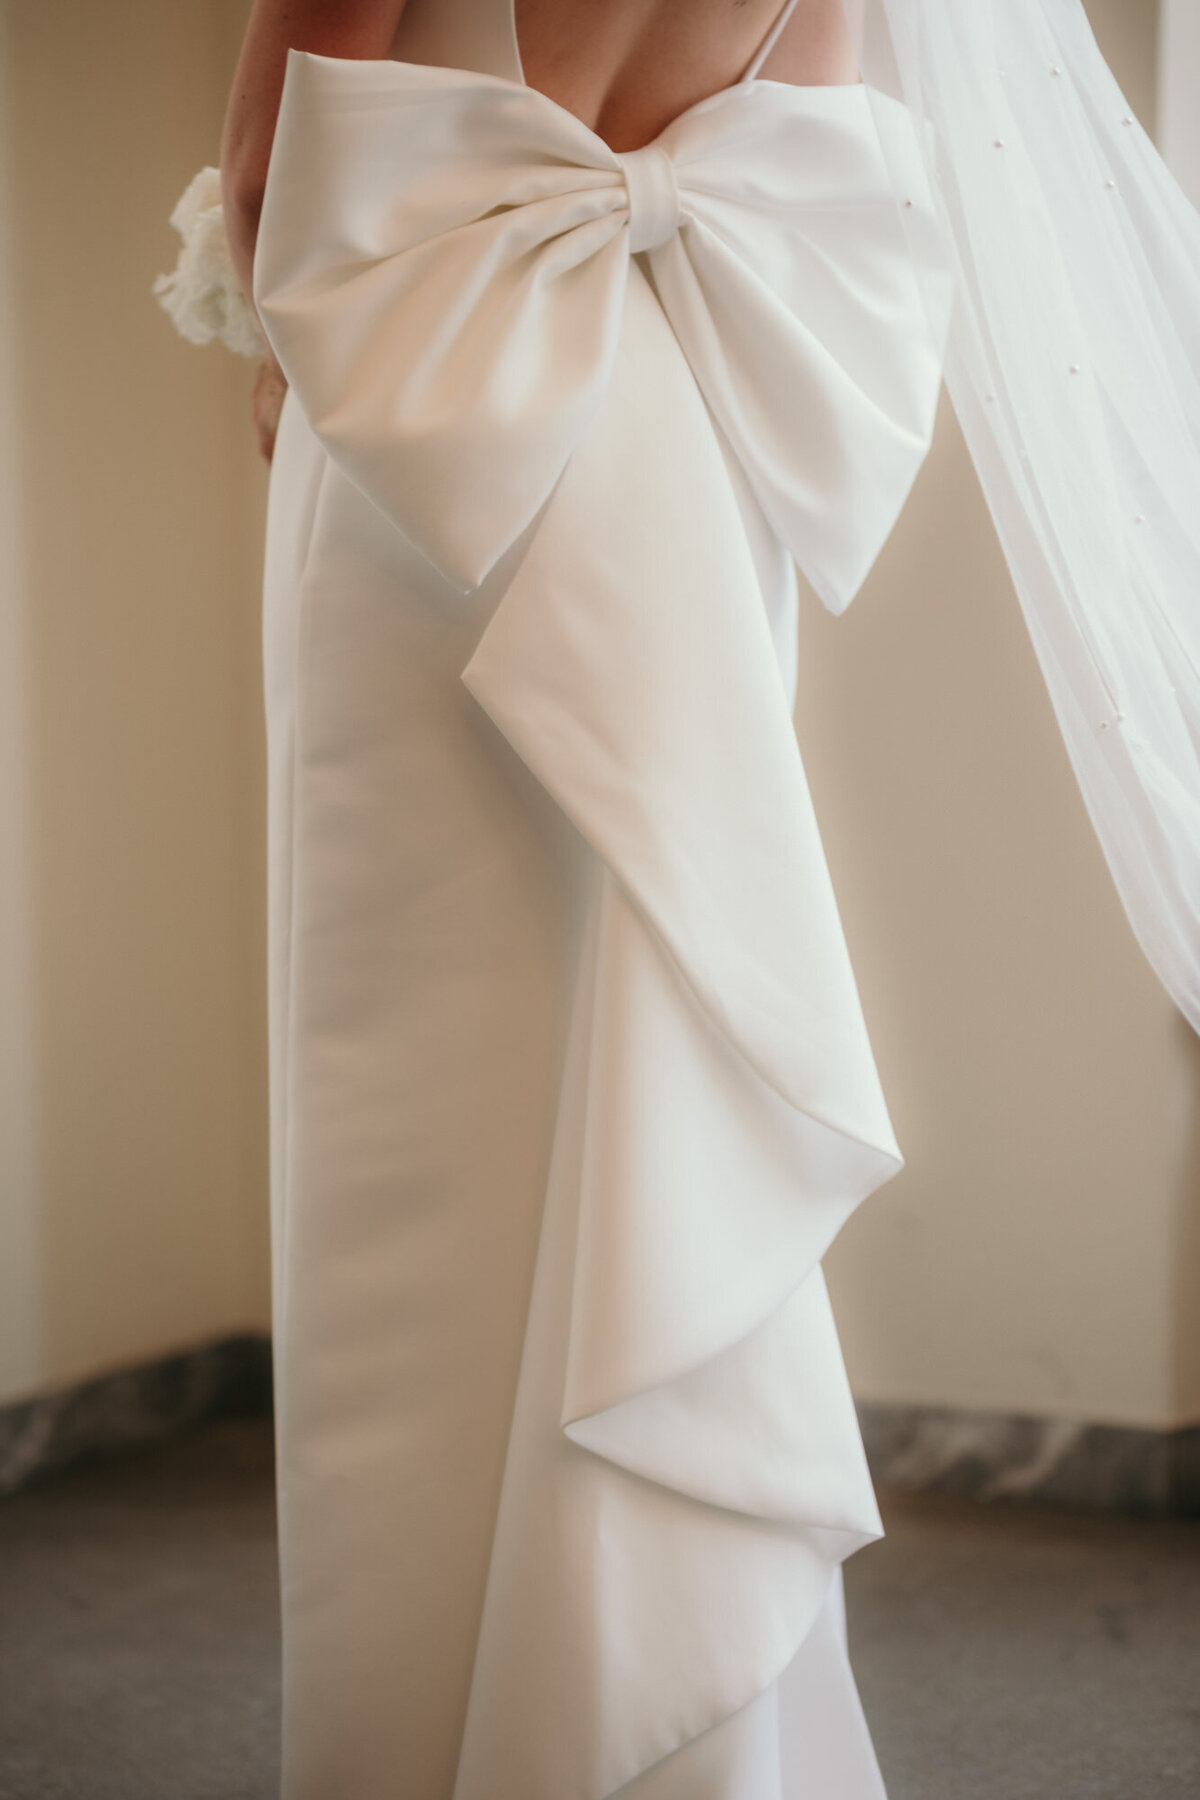 Eine Nahaufnahme der großen Schleife am Rücken des Kleides der Braut.